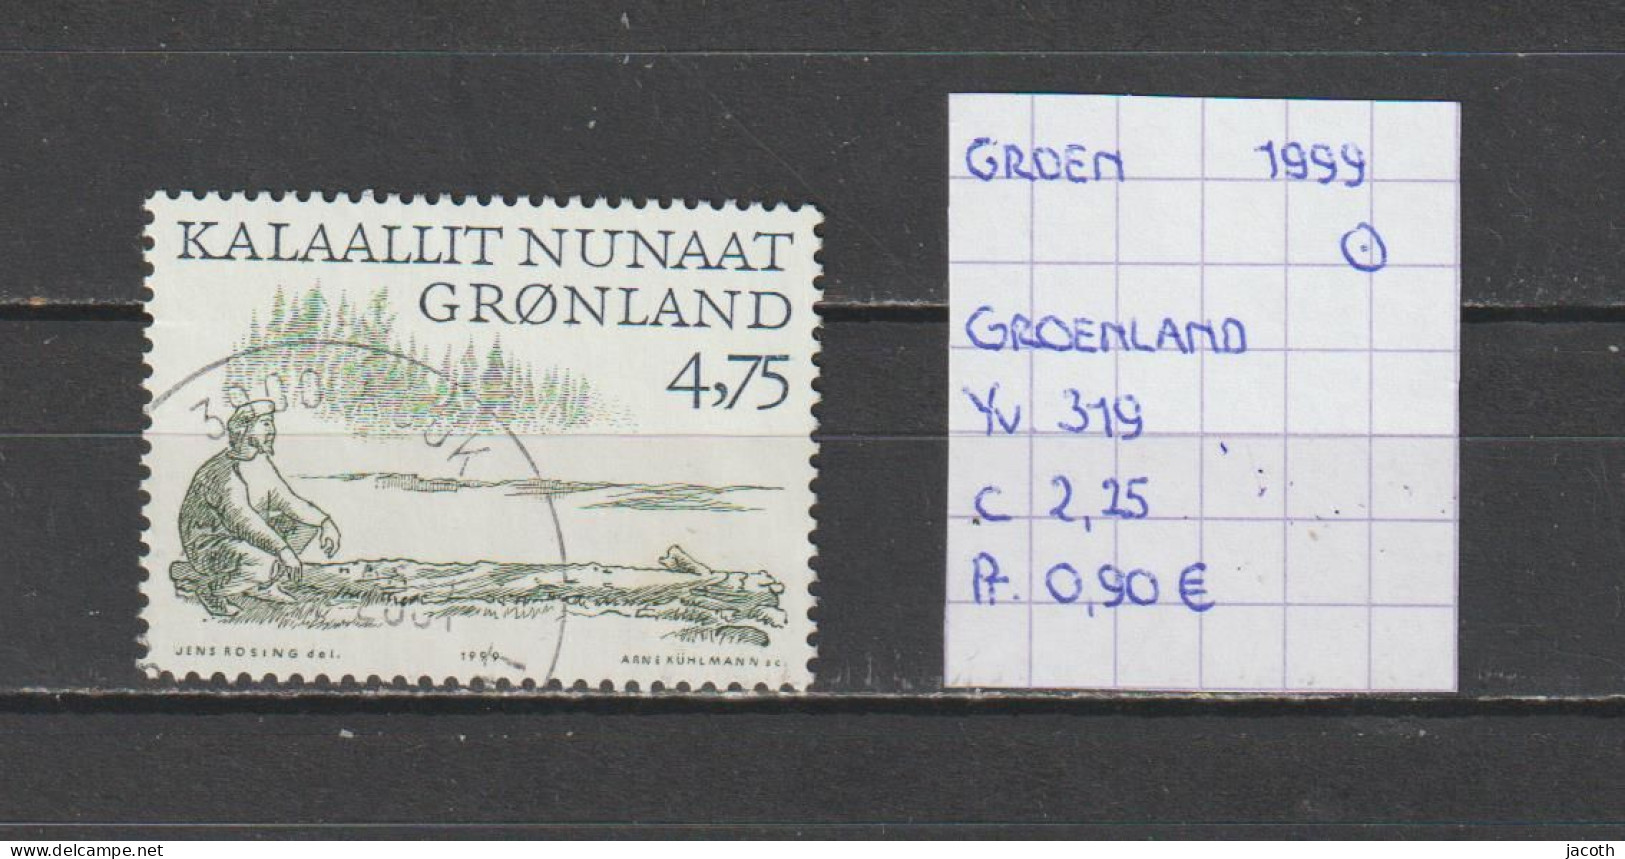 (TJ) Groenland 1999 - YT 319 (gest./obl./used) - Usados